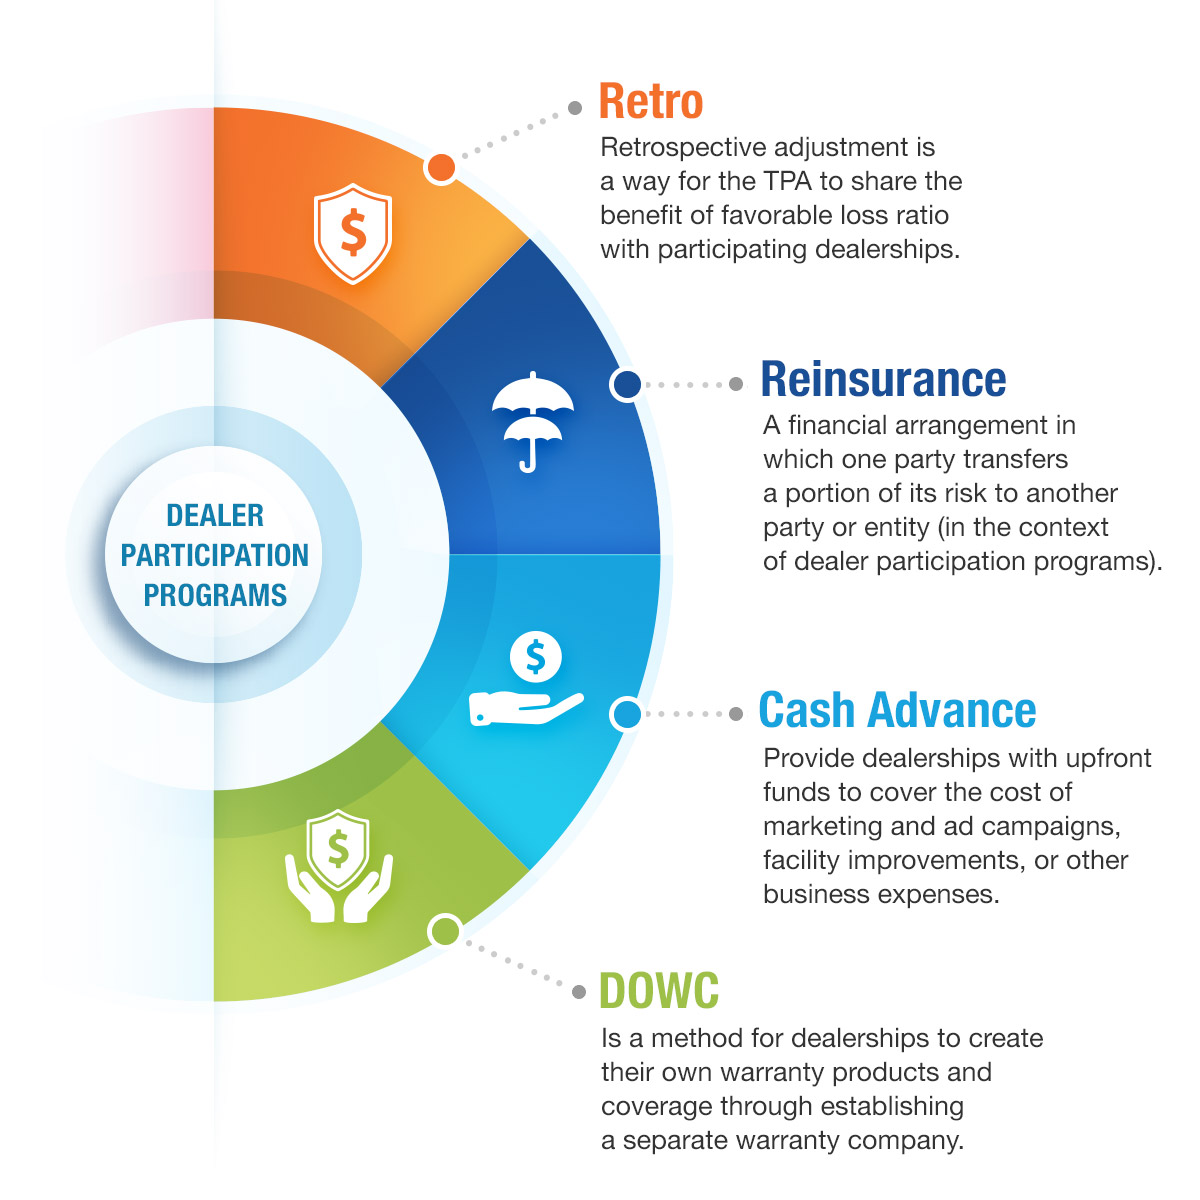 Dealer Participation Infographic - retro, reinsurance, cash advance, and DOWC